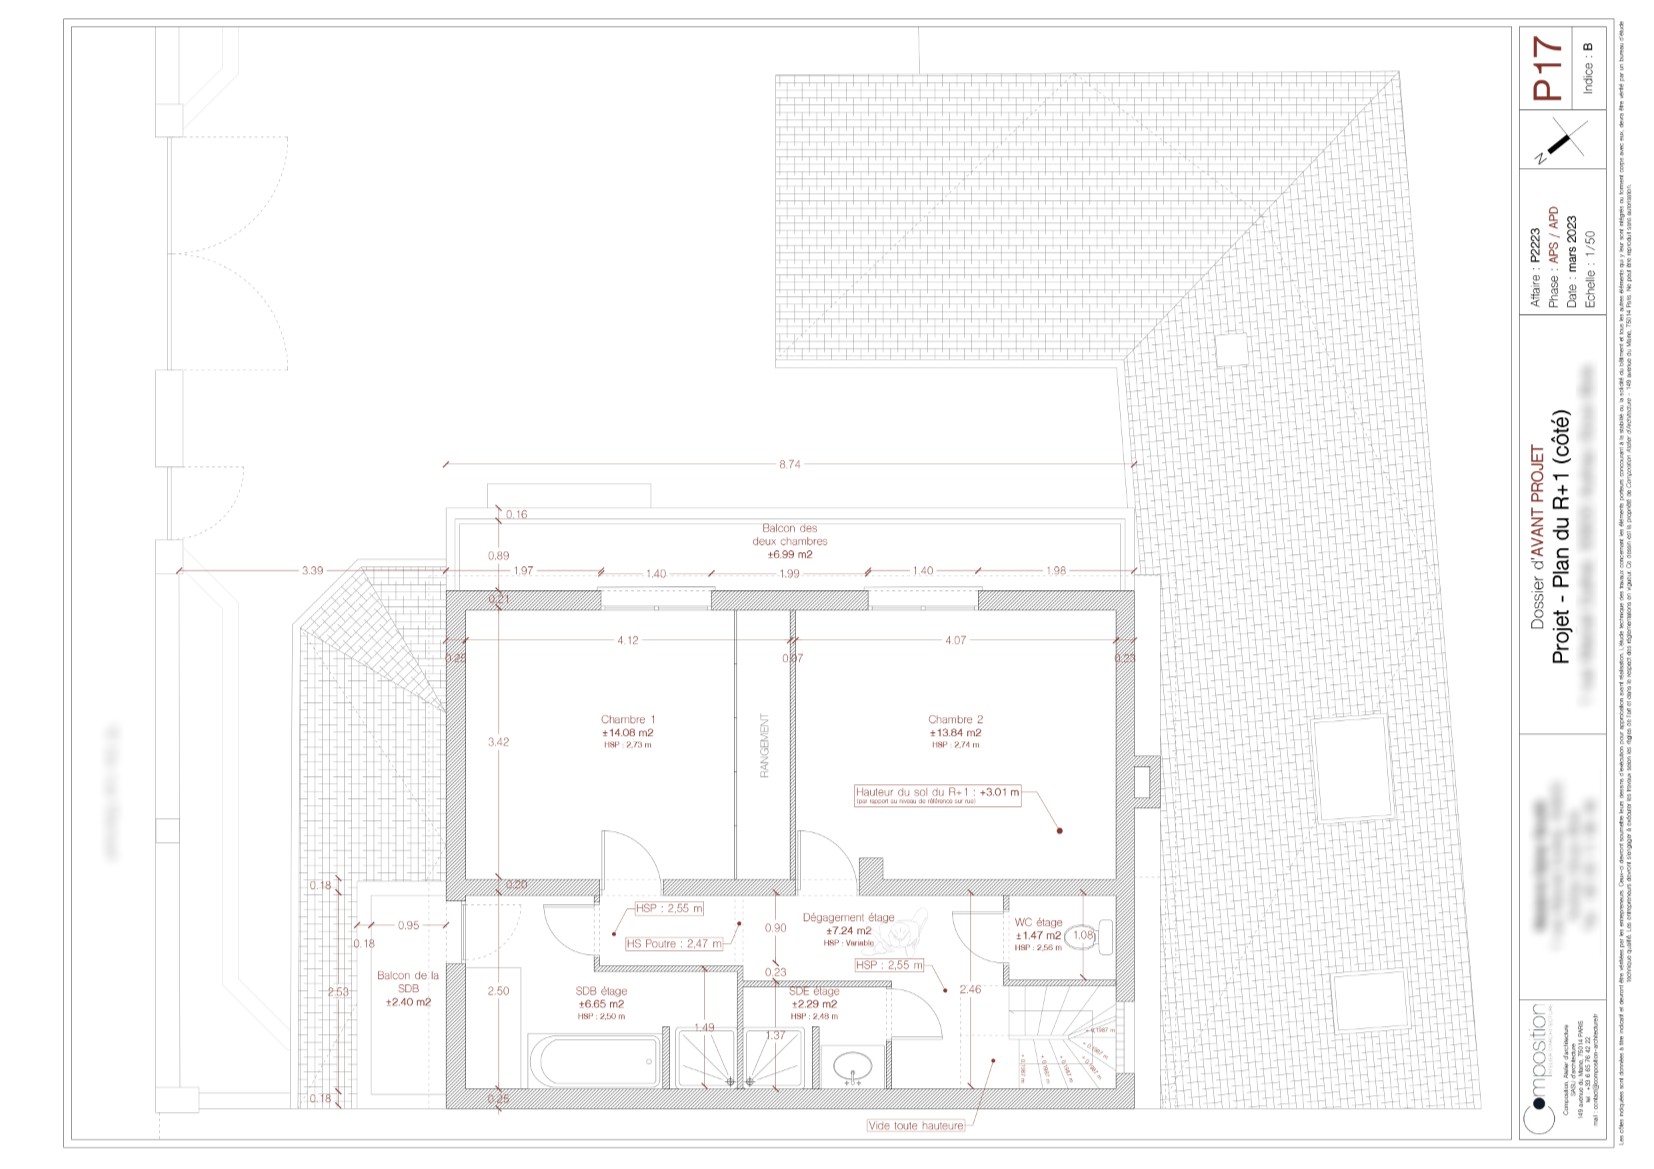 Plan du R+1 du projet de surélévation d'une maison à Aulnay-sous-Bois